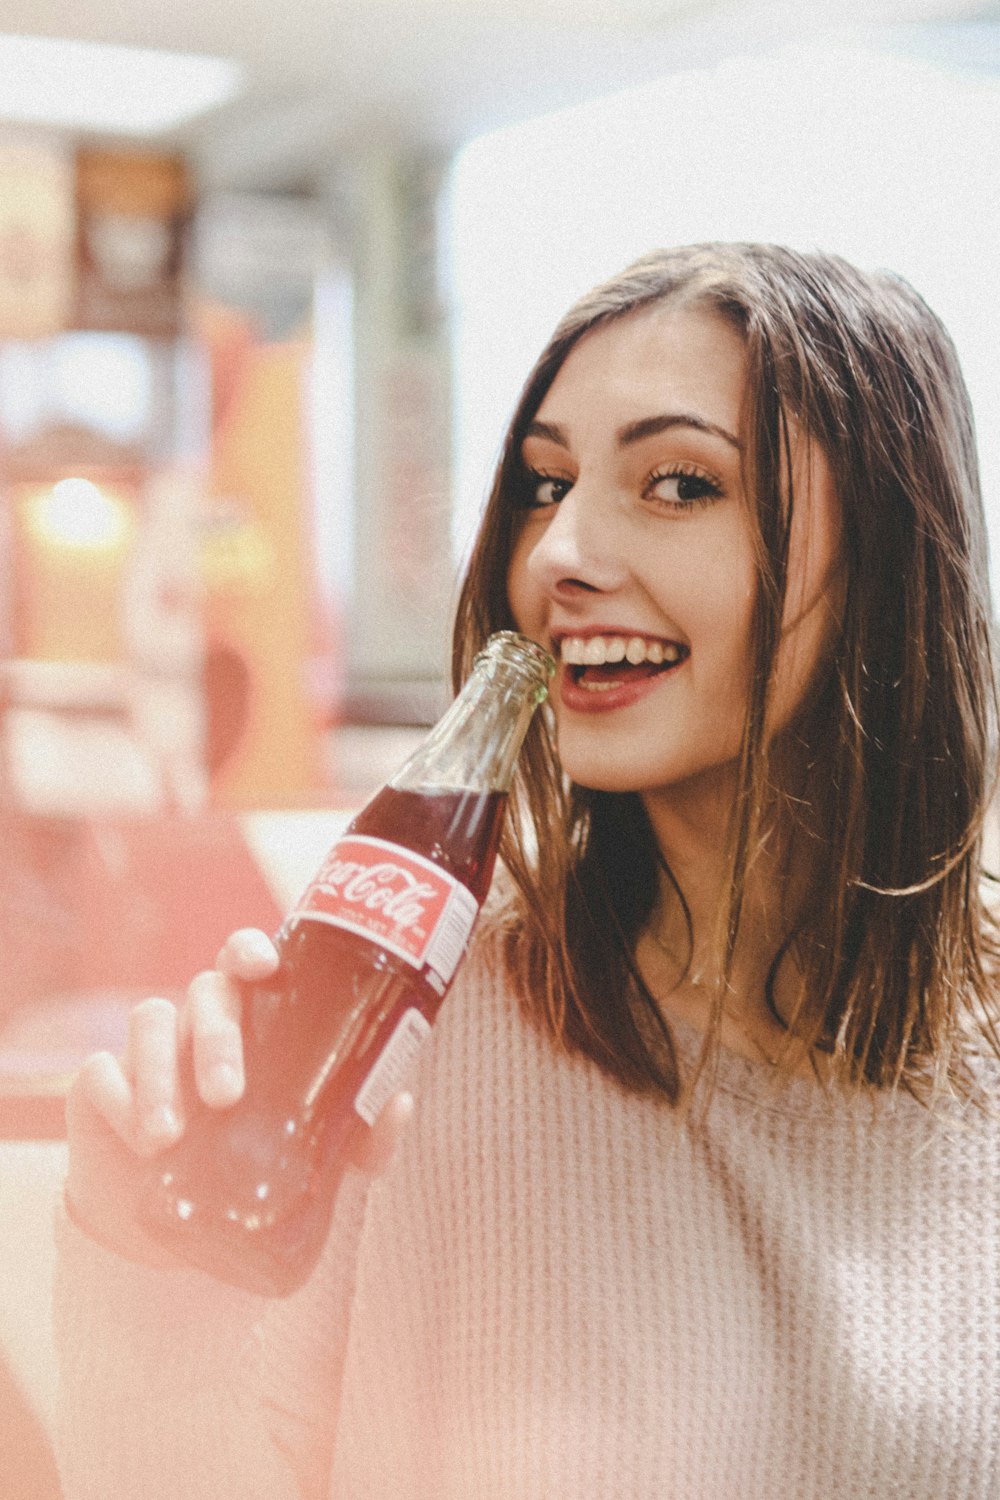 コカ・コーラの瓶を持つ女性